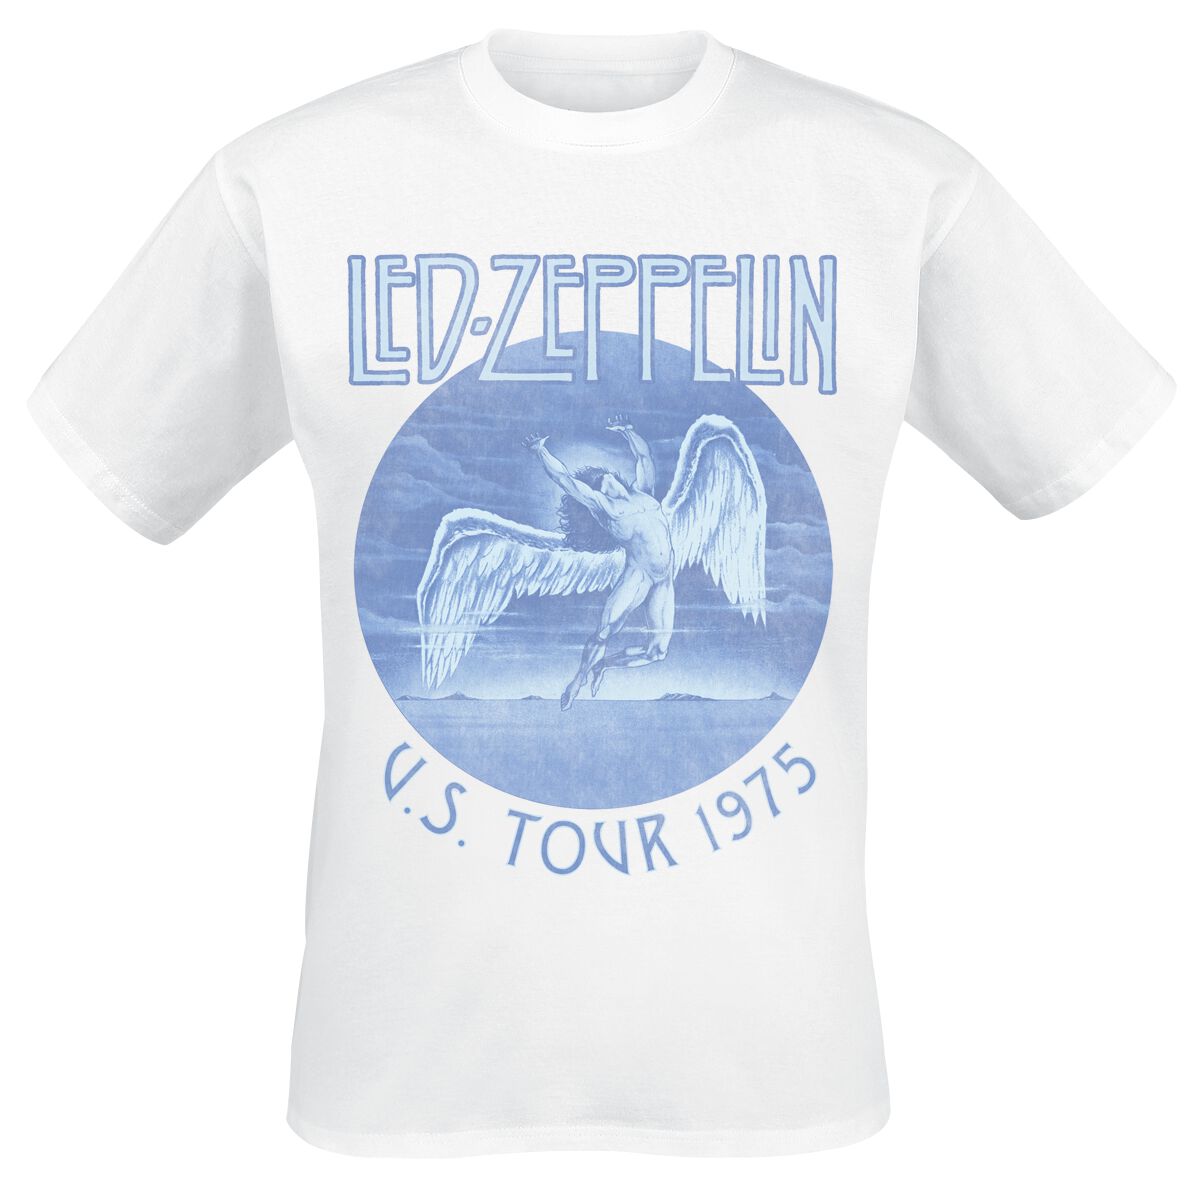 Led Zeppelin T-Shirt - Tour 75 - S bis XXL - für Männer - Größe XXL - weiß  - Lizenziertes Merchandise!